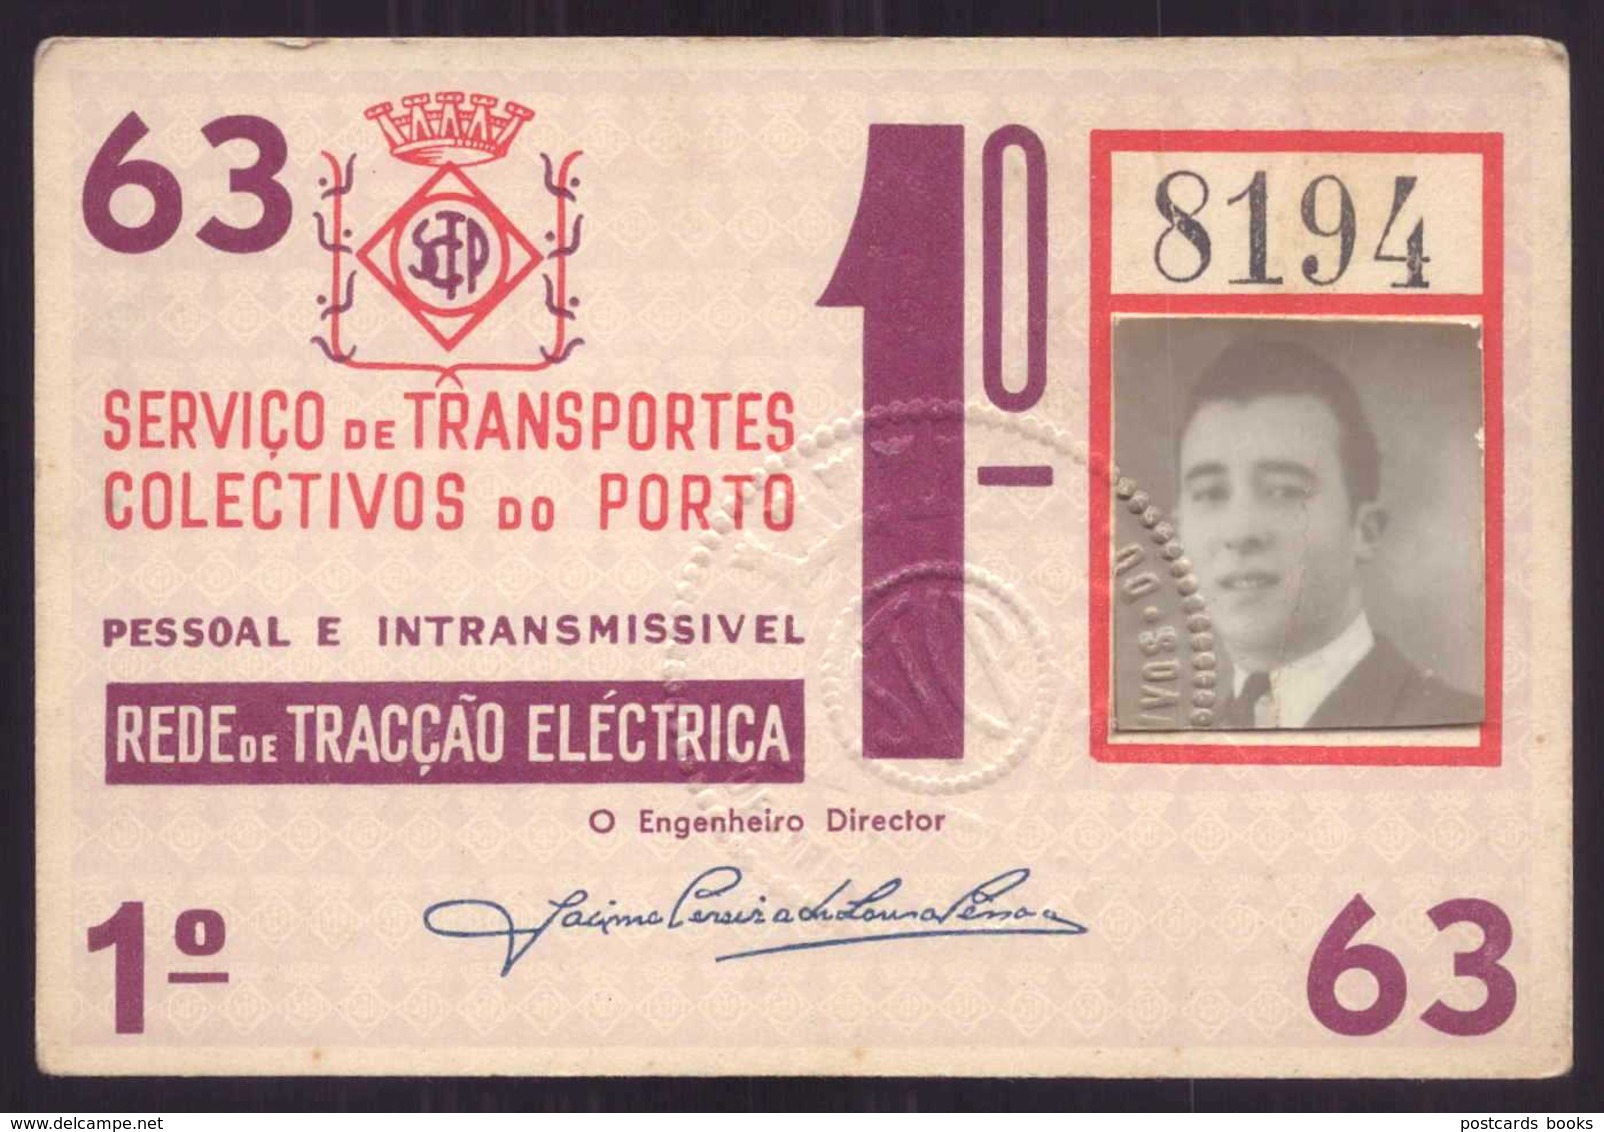 1963 Passe STCP SERVIÇO TRANSPORTES COLECTIVOS Do PORTO Rede De Tracção Electrica 1963. Pass Ticket TRAM Portugal - Europe